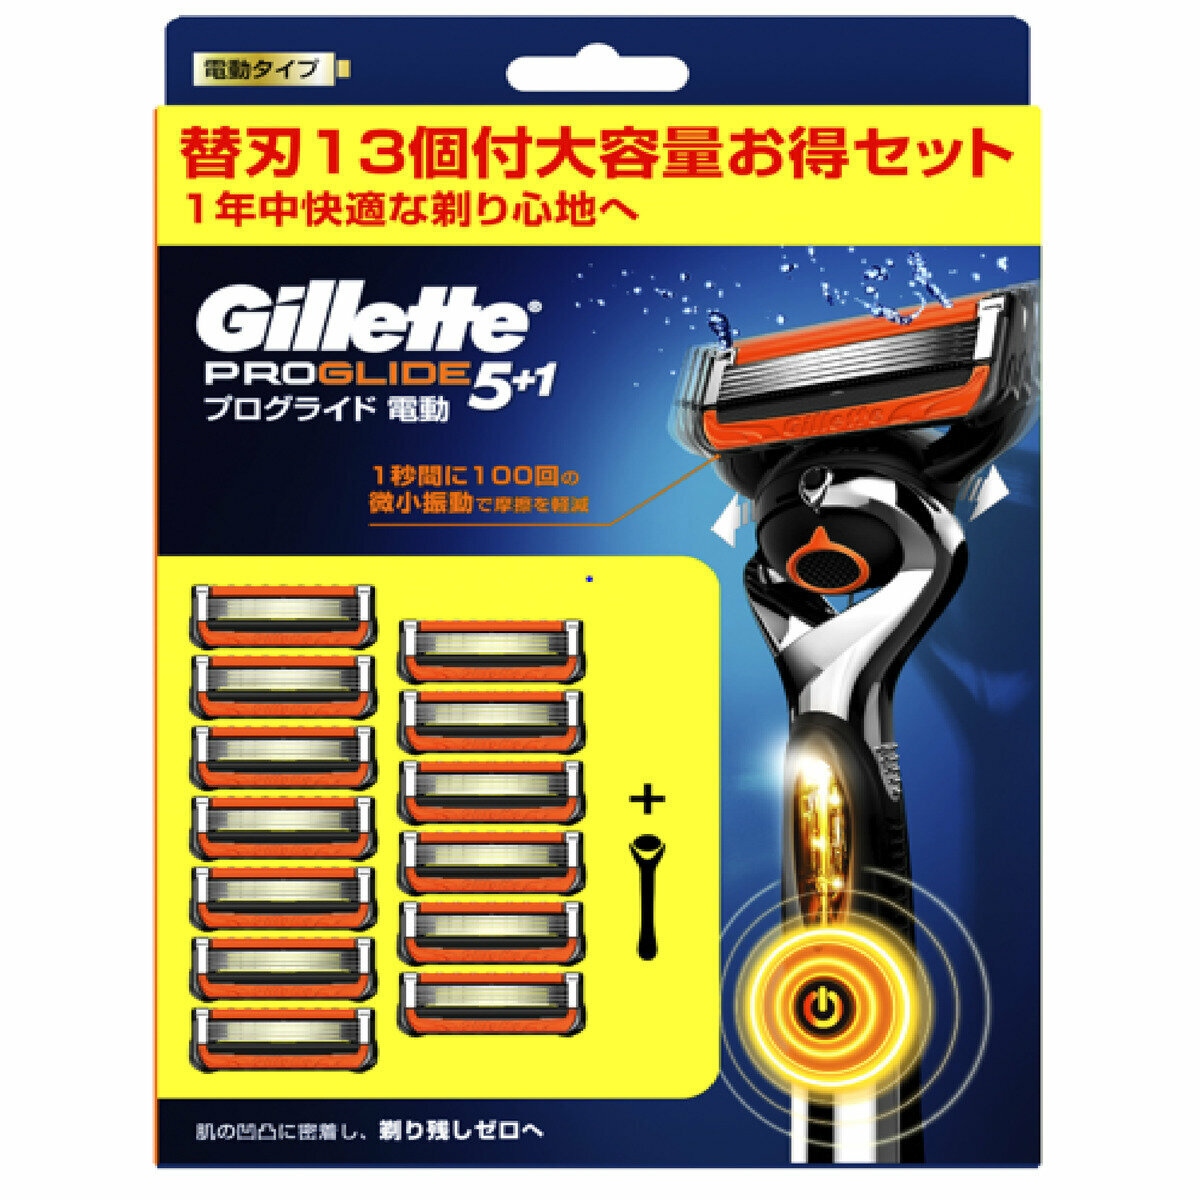 店舗 Gillette プログライド 替刃8コ入×6 合計48点 新パッケージ asakusa.sub.jp